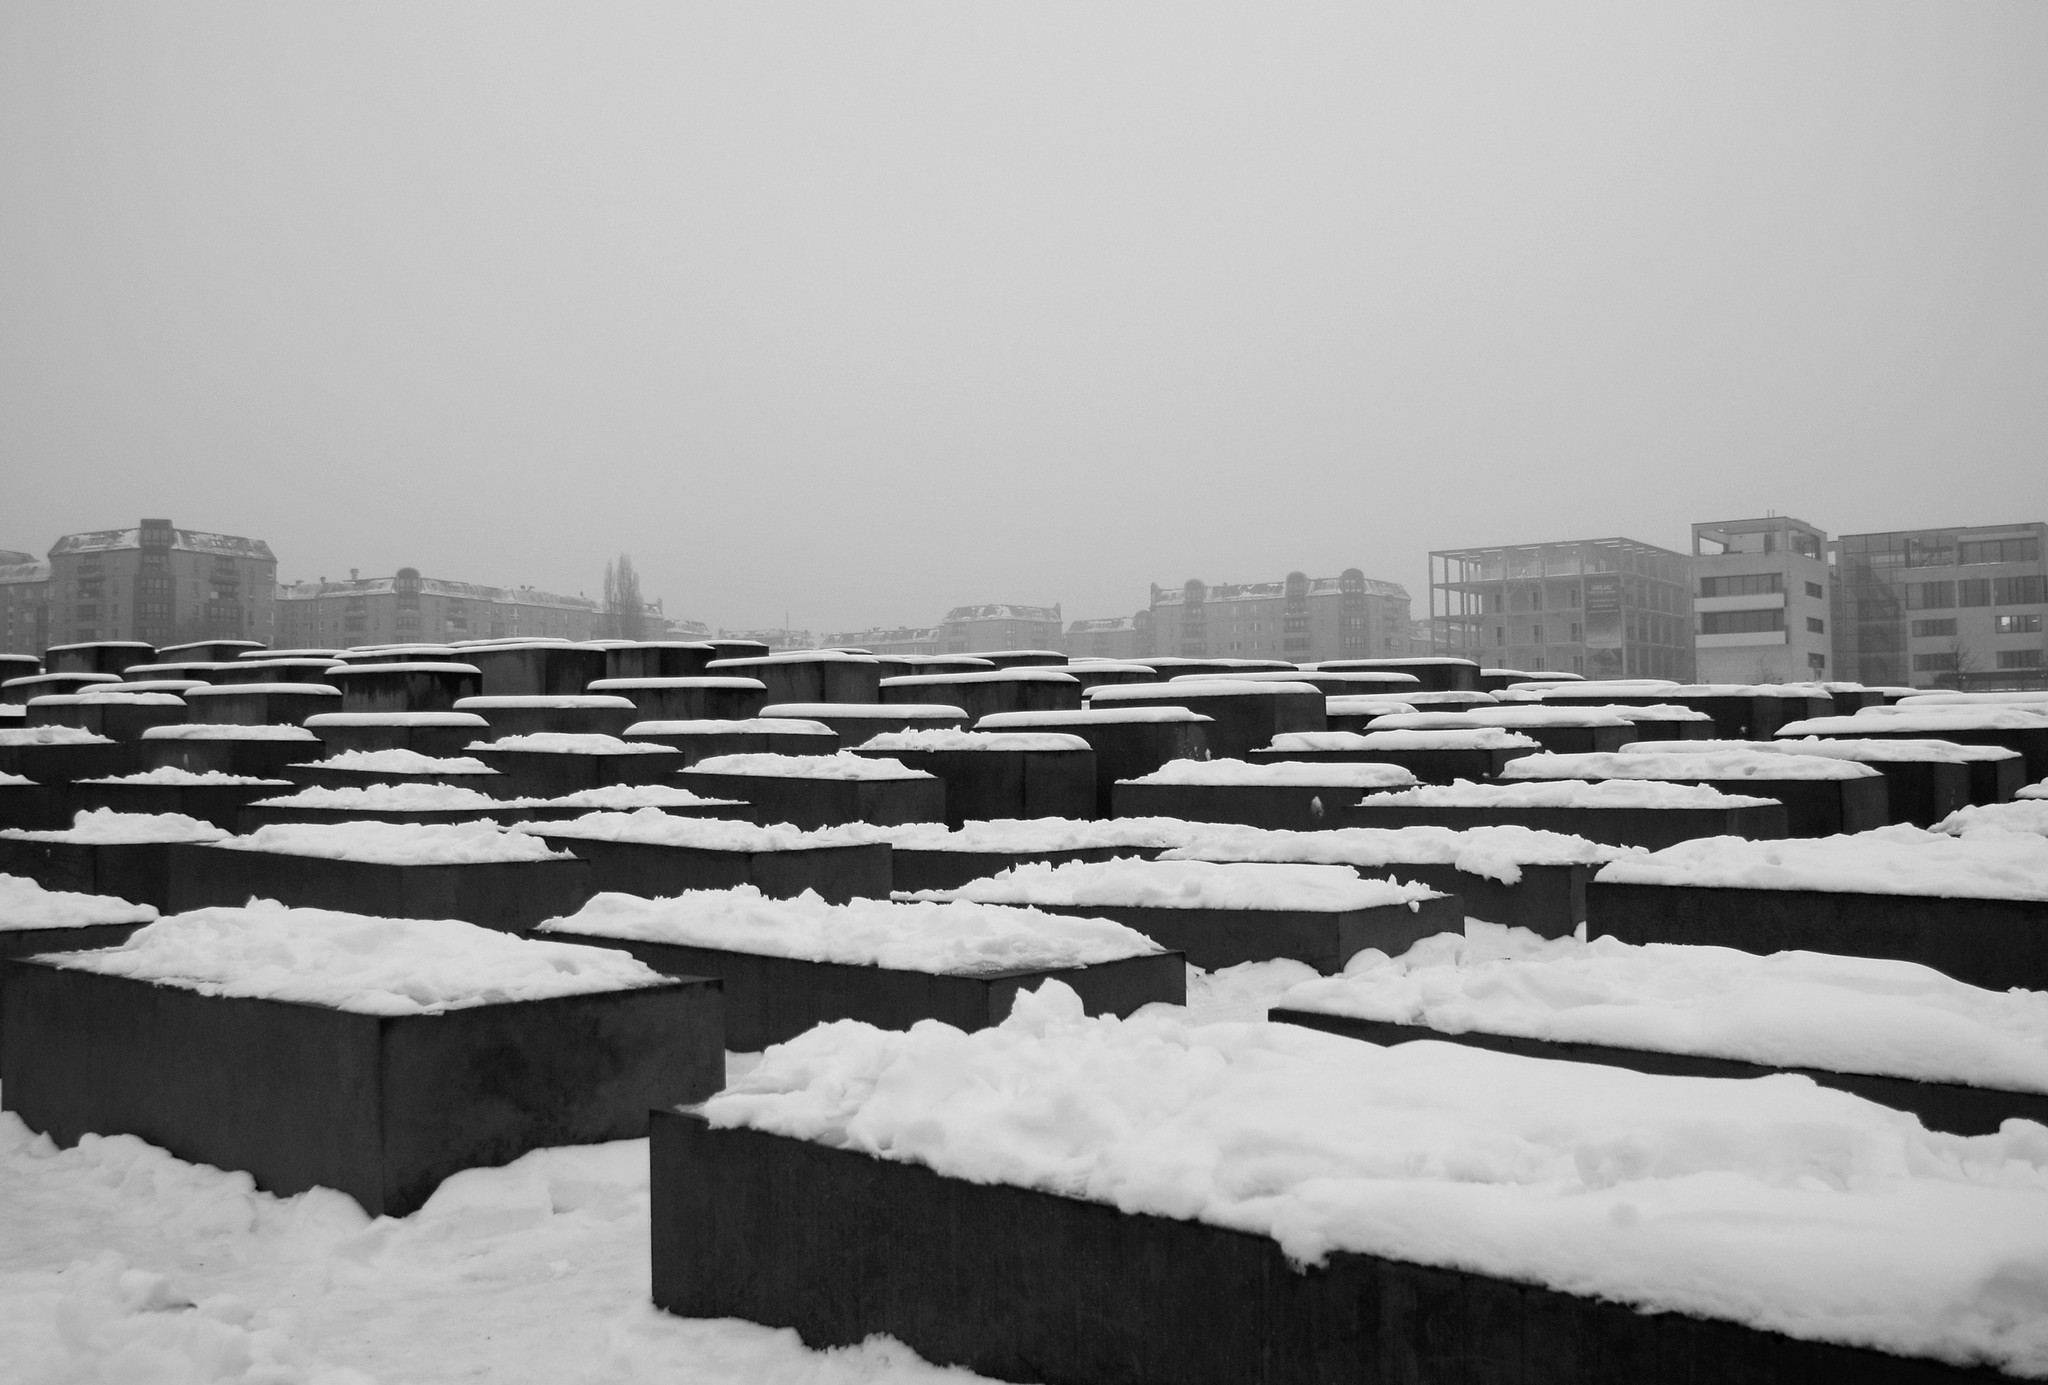 Monument commémoratif en souvenir des victimes de la Shoah à Berlin, photographié sous la neige